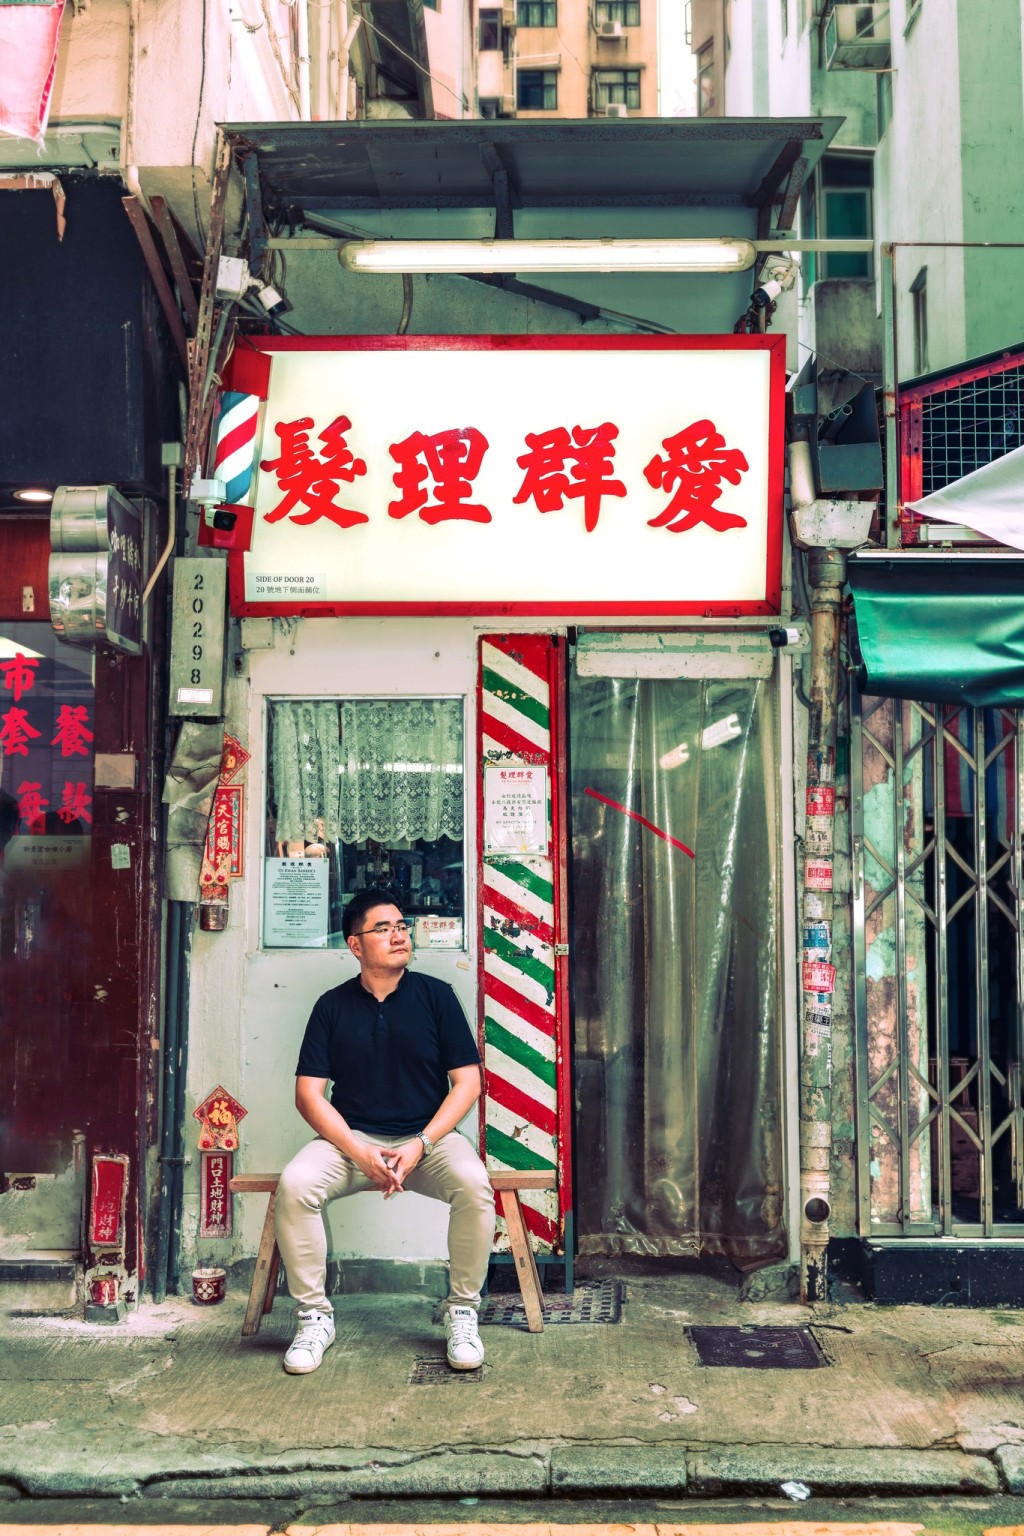 灣仔愛群理髮店在1962起開業，至今由90後當家Mark接手經營。(Discover Hong Kong)